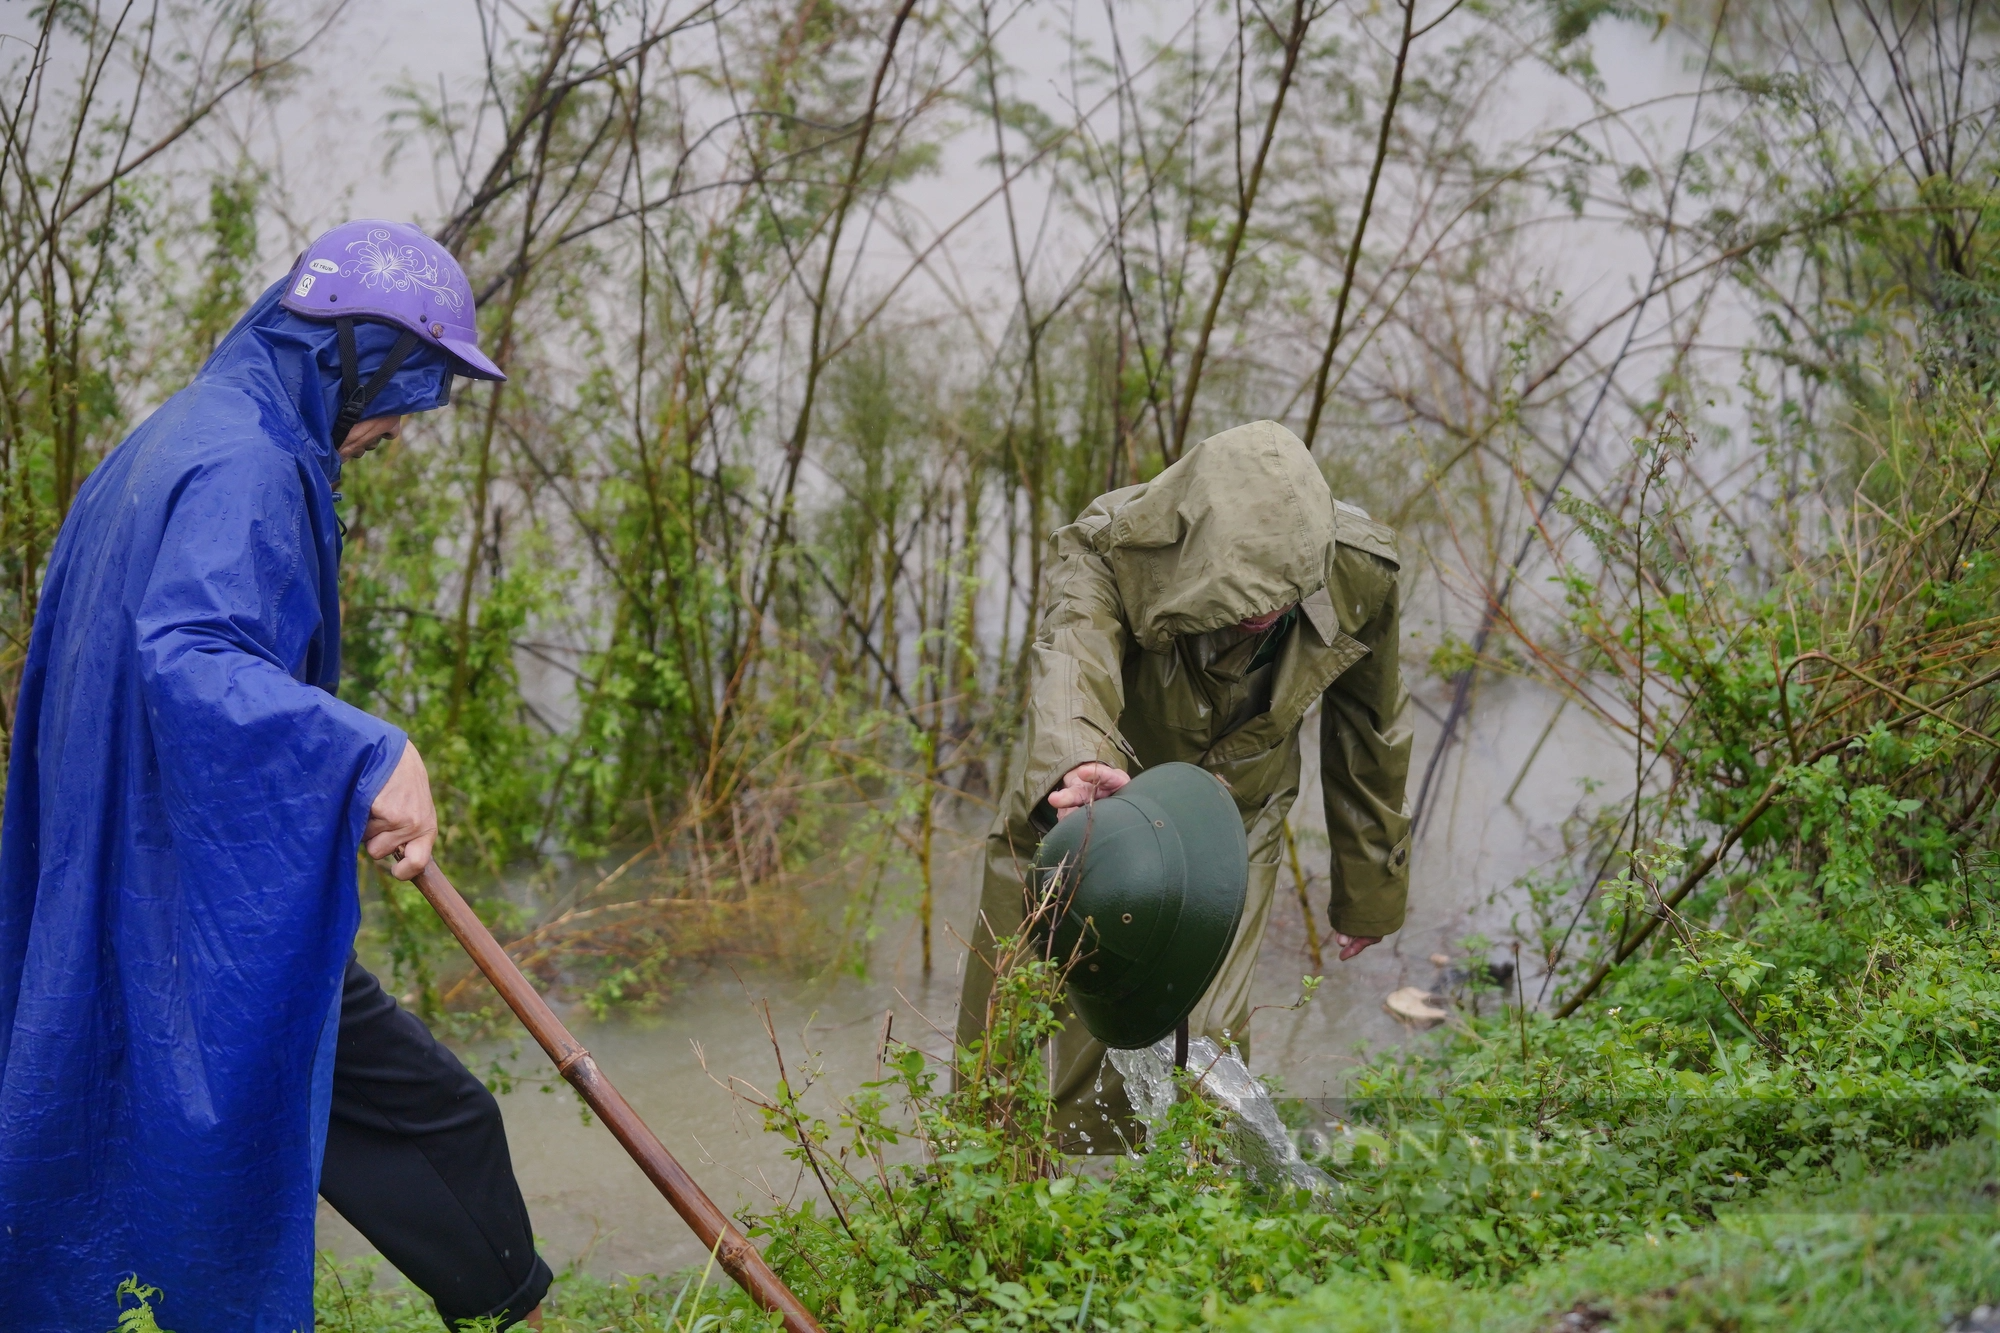 Cả làng ở Hà Tĩnh “đội mưa” cùng nhau lội nước đi bắt chuột bảo vệ mùa màng - Ảnh 13.